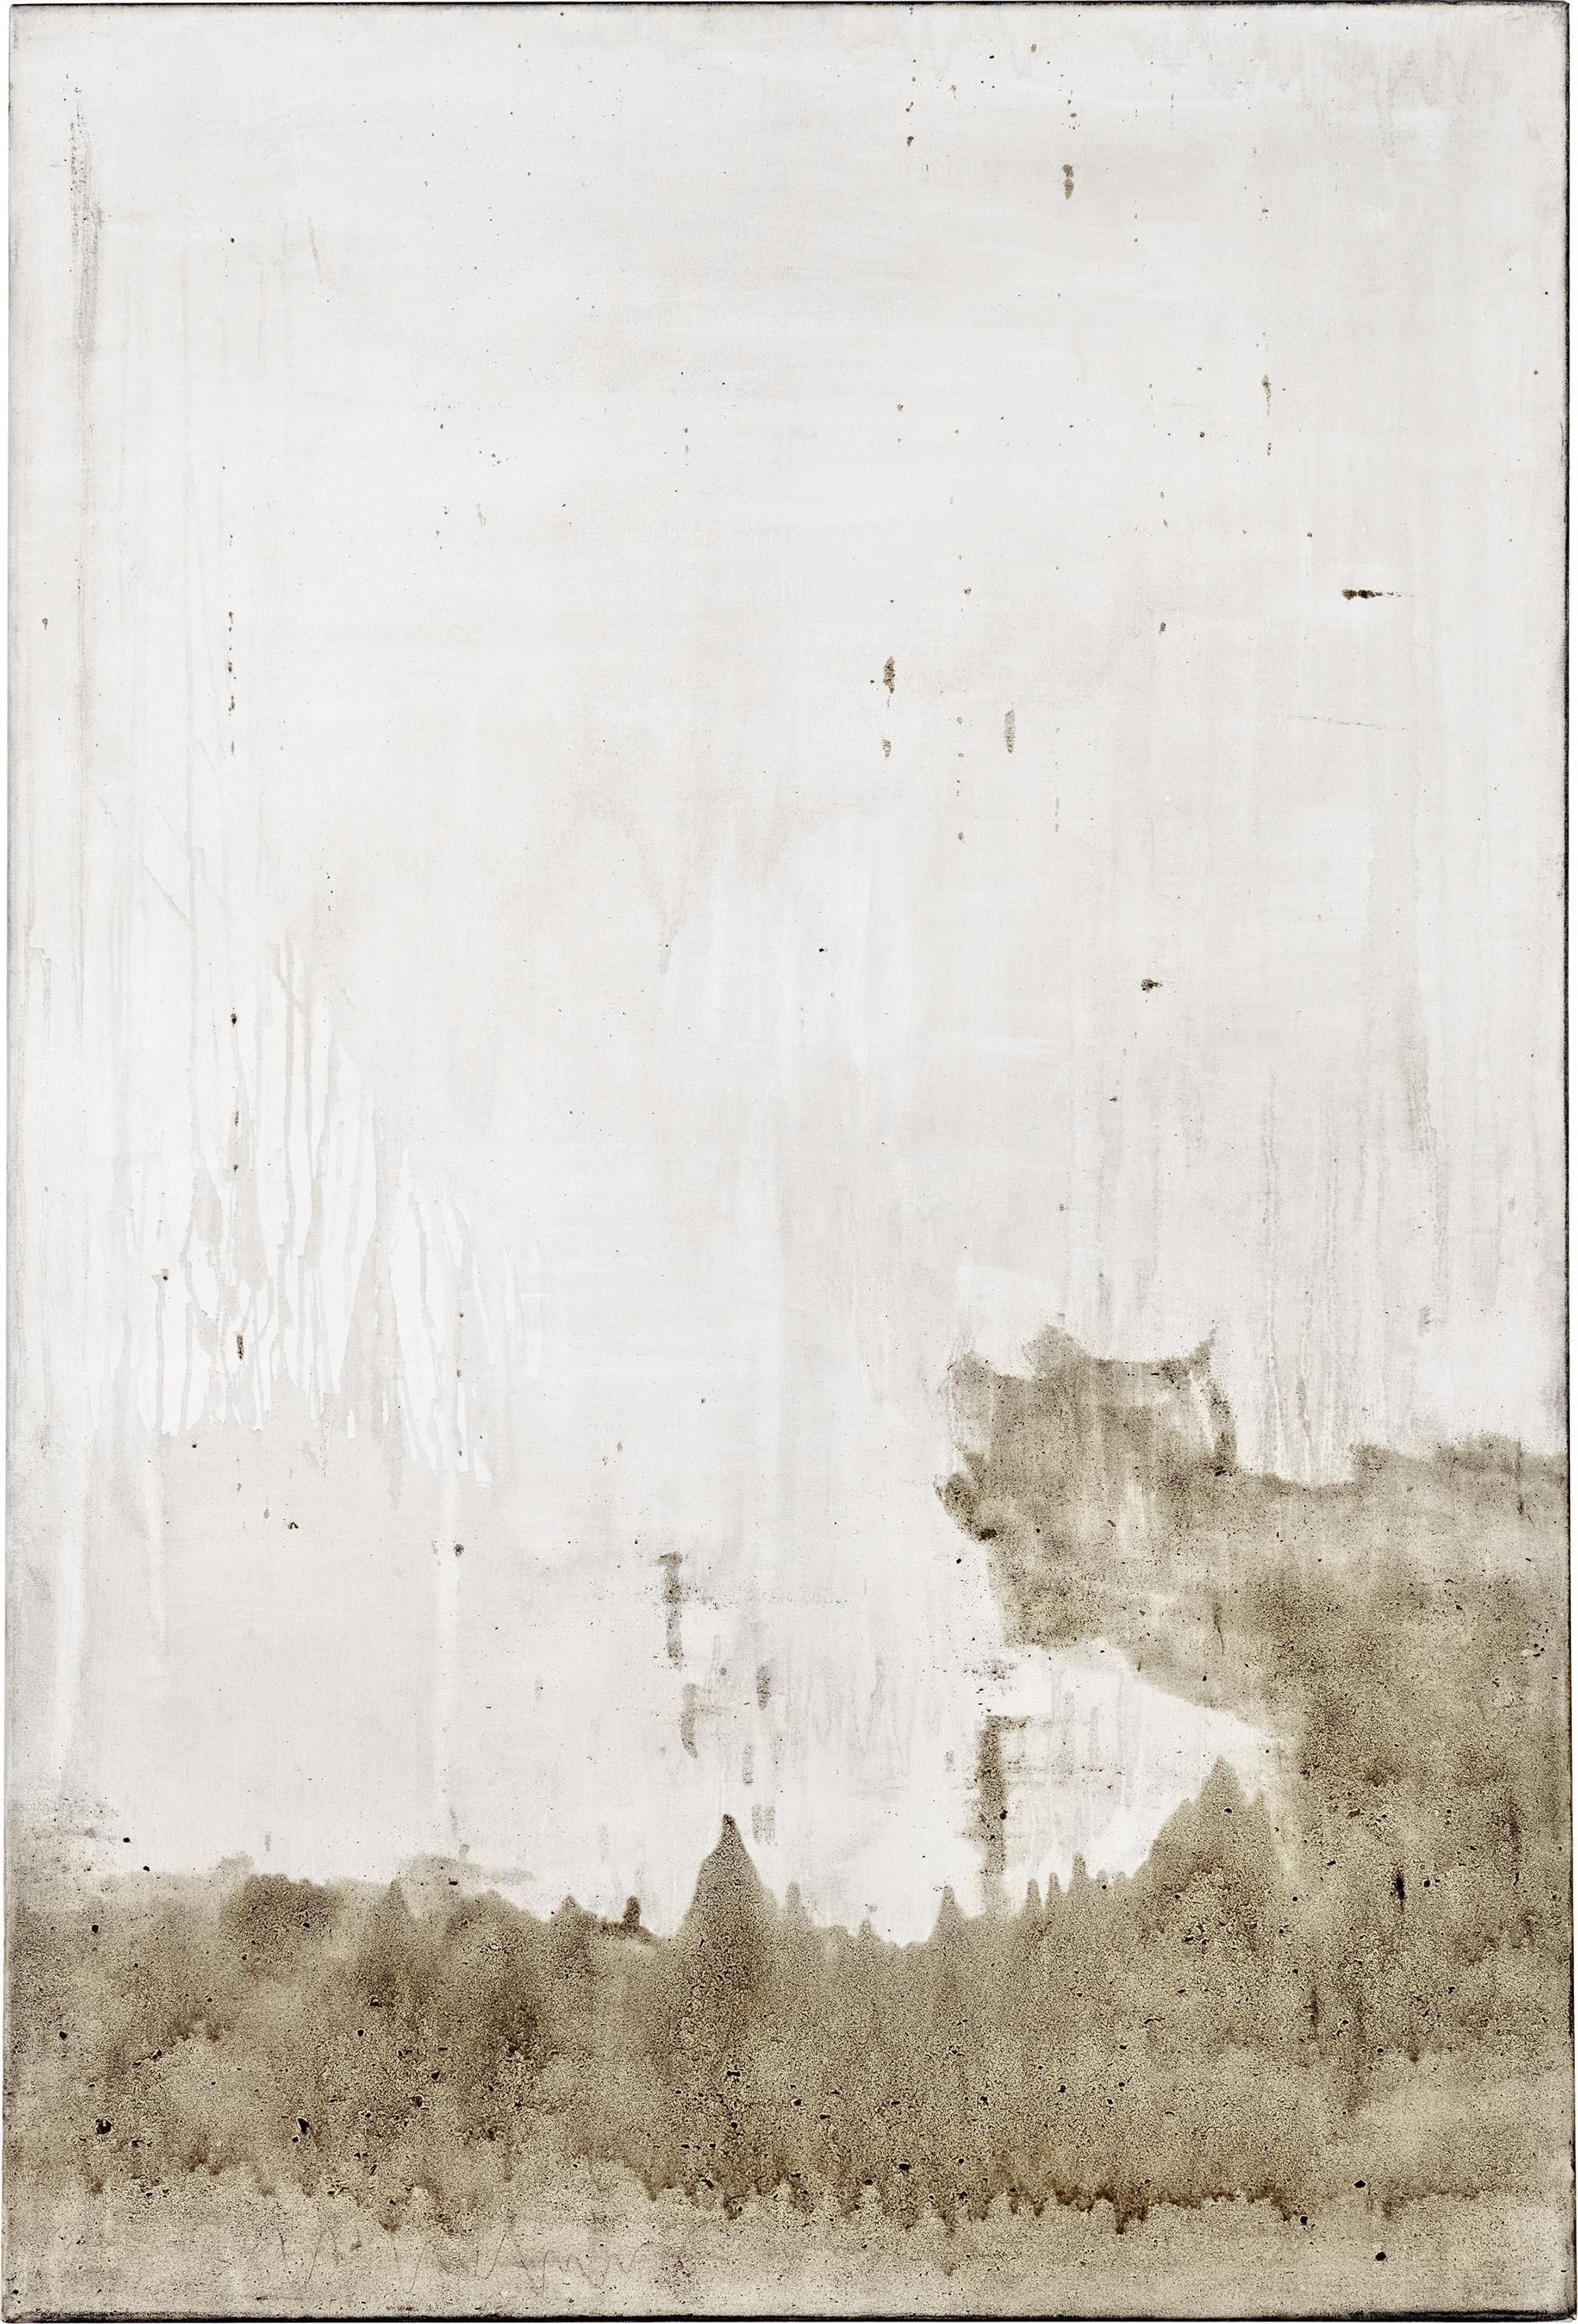 Ashes to Ashes 1   // Asche in Eitempera auf Leinwand // 150 x 100 cm // 2011